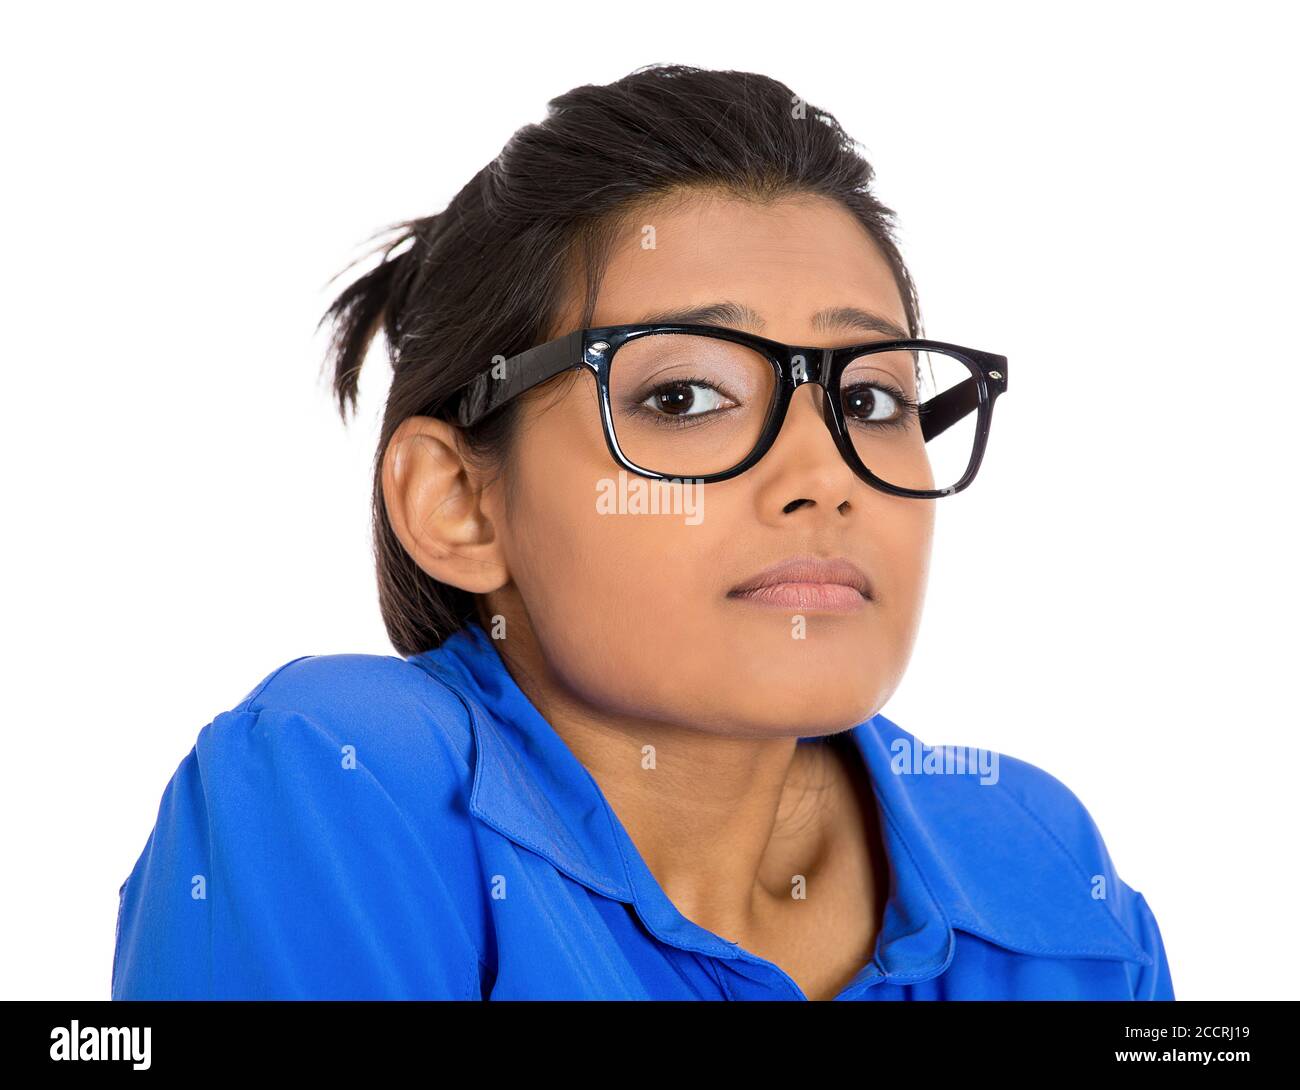 Nahaufnahme Porträt einer jungen nerdy aussehenden Frau mit großer Brille, sehr schüchtern und ängstlich, die Sie anschaut, isoliert auf weißem Hintergrund. Stockfoto